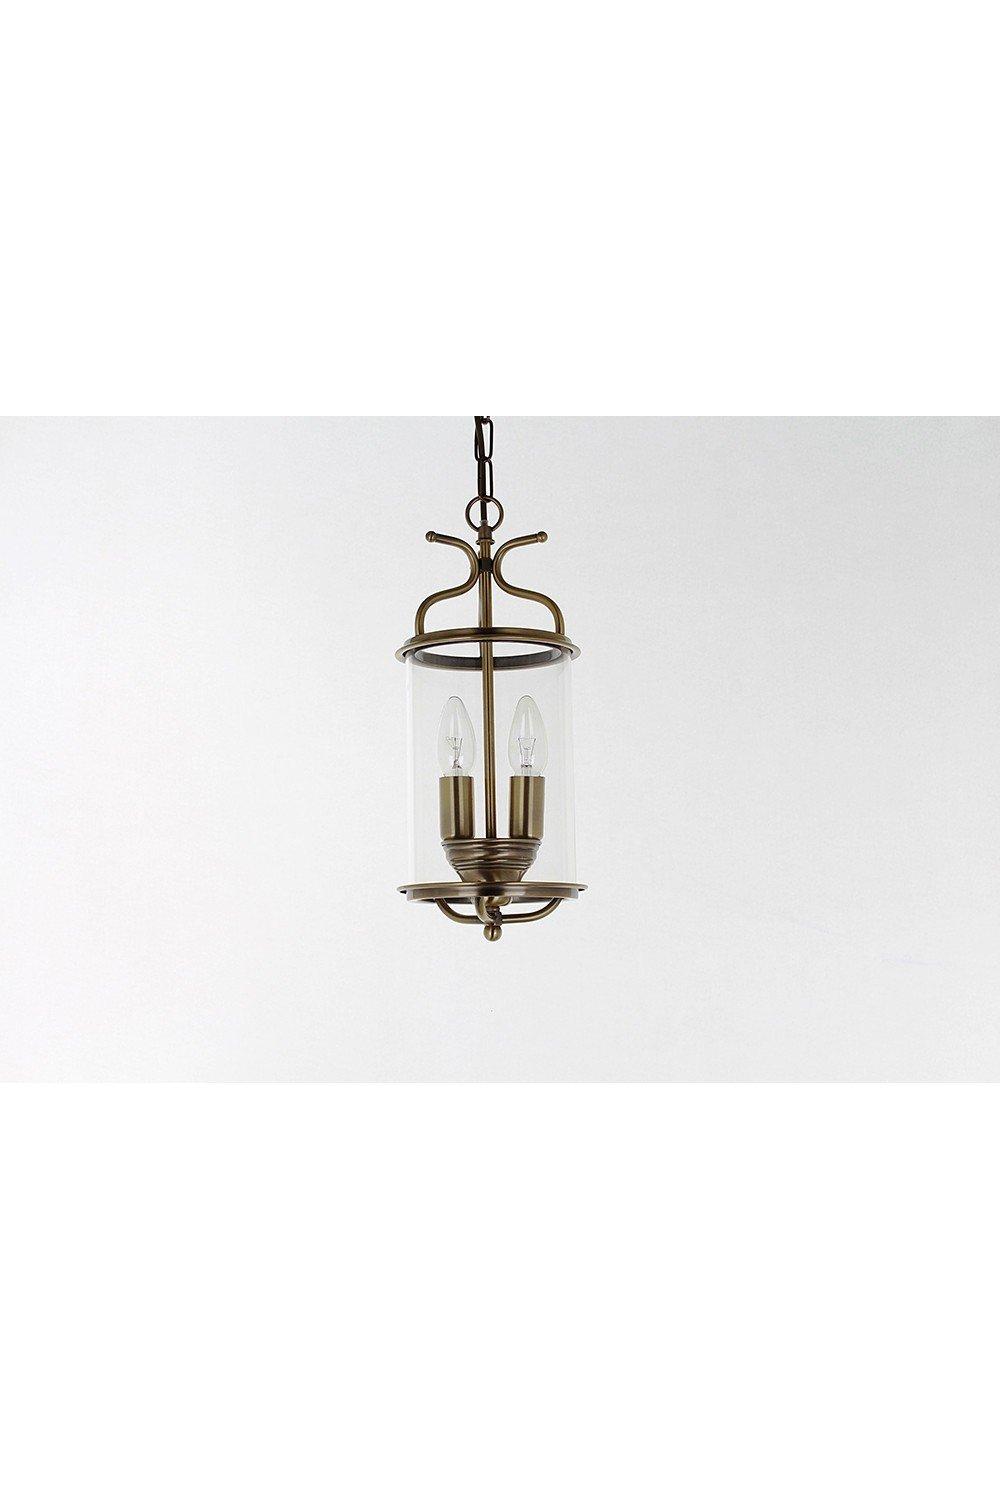 Winchester Blown Glass Brass Lanterns Pendant Ceiling Light